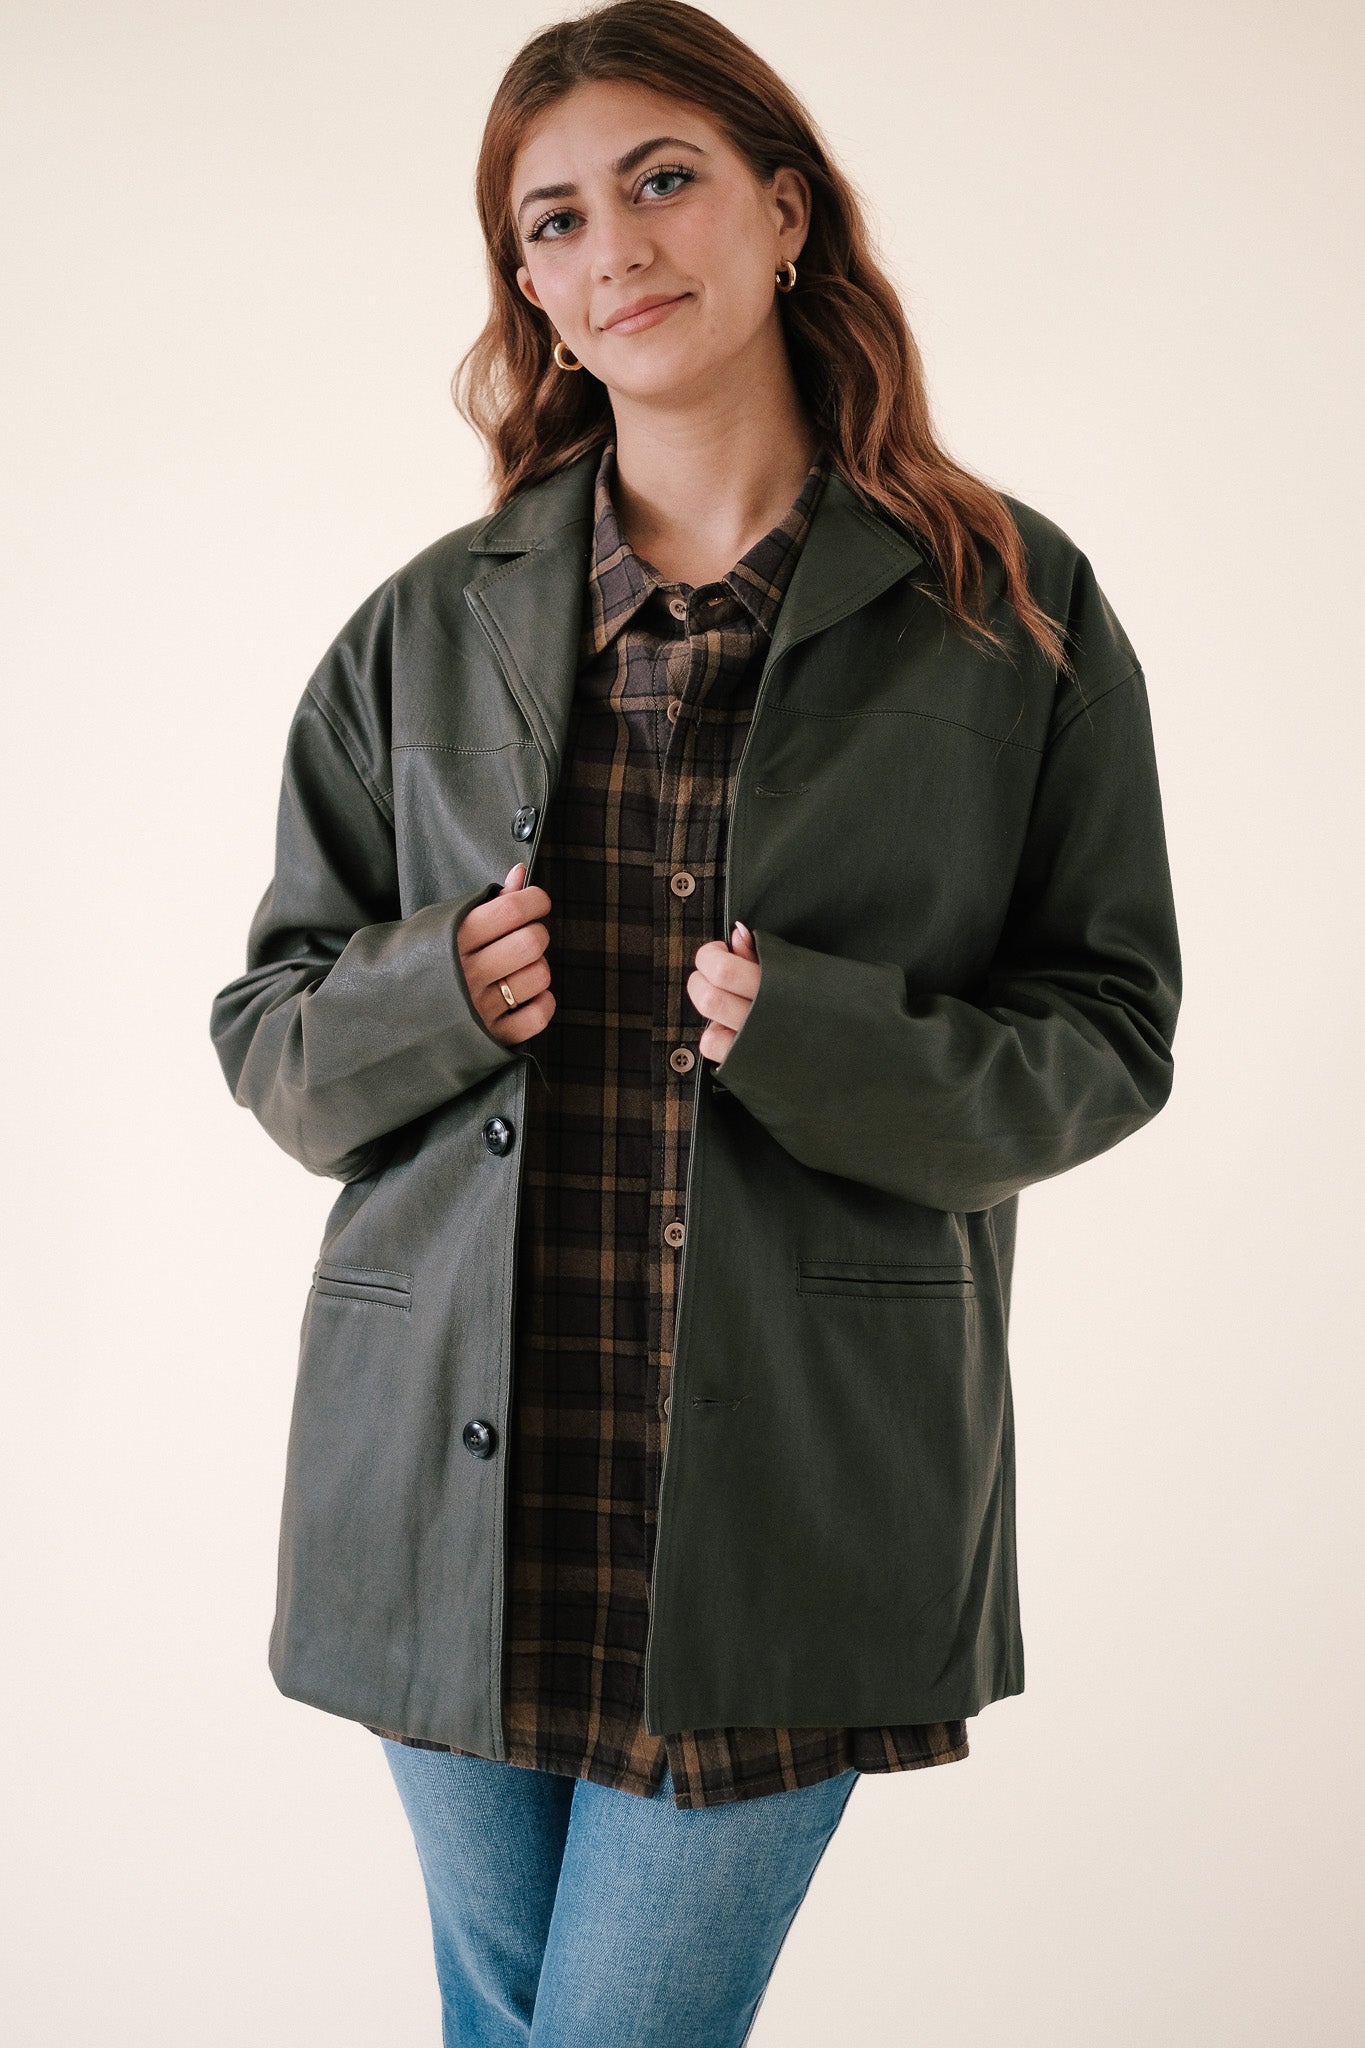 Emma Deep Olive Faux Leather Oversized Jacket